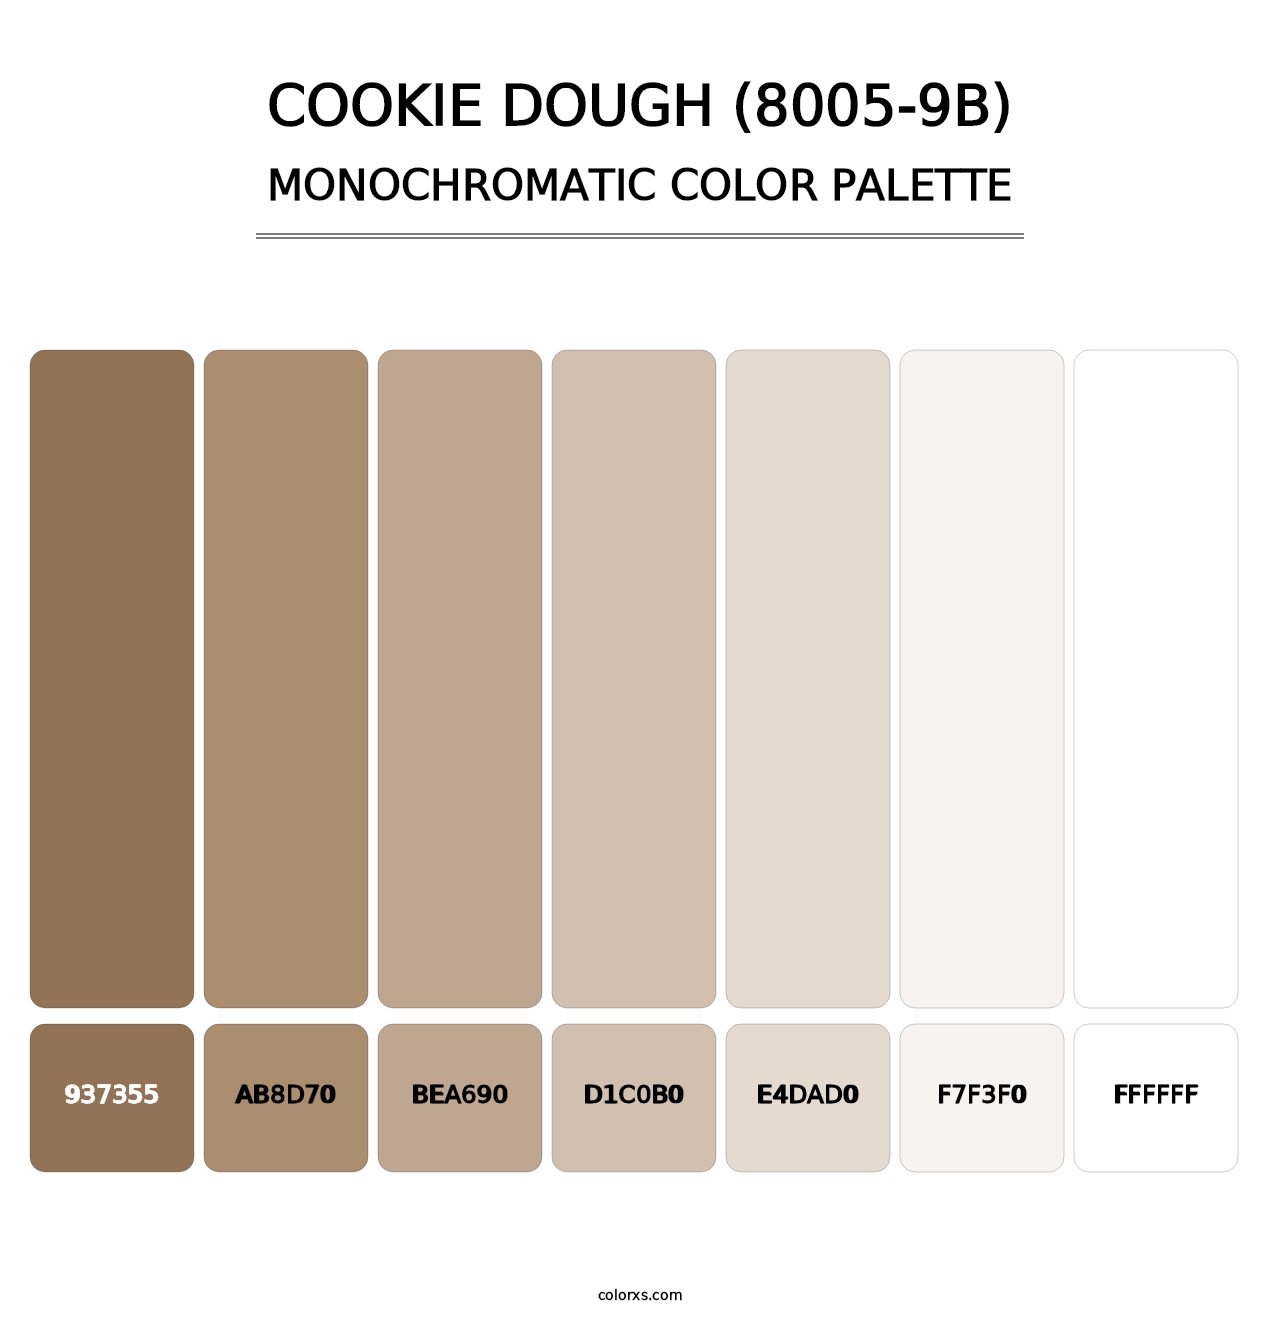 Cookie Dough (8005-9B) - Monochromatic Color Palette